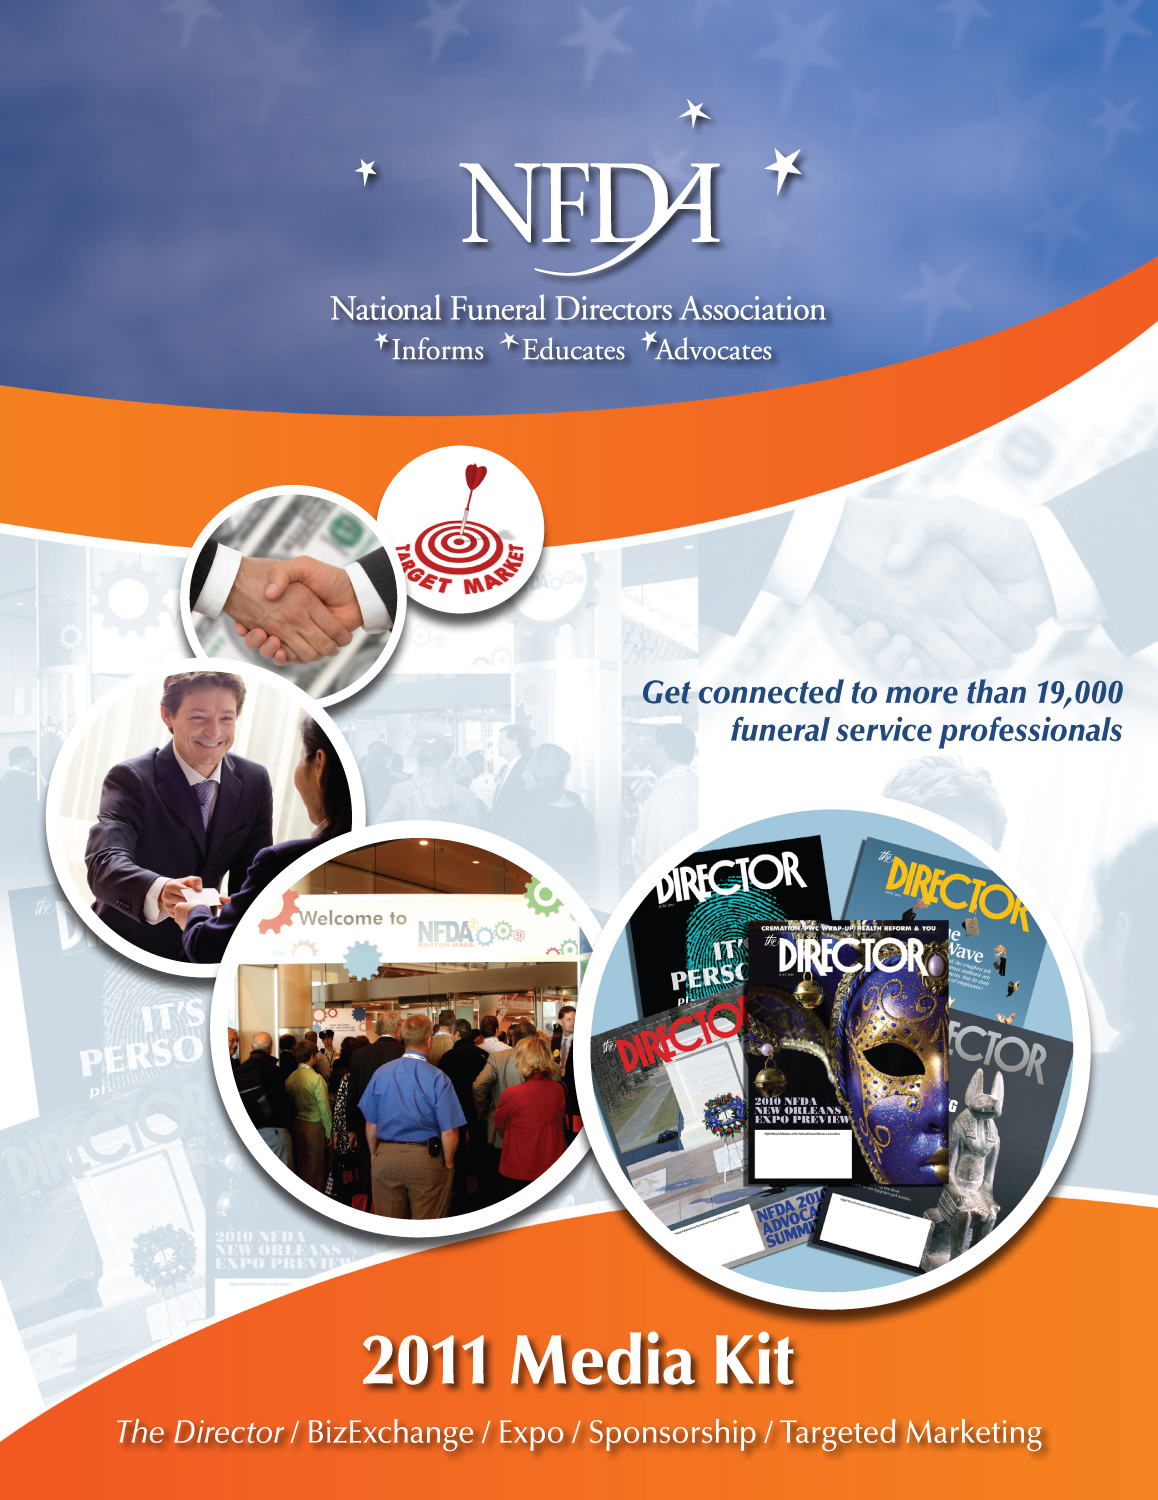 NFDA's 2011 Media Kit